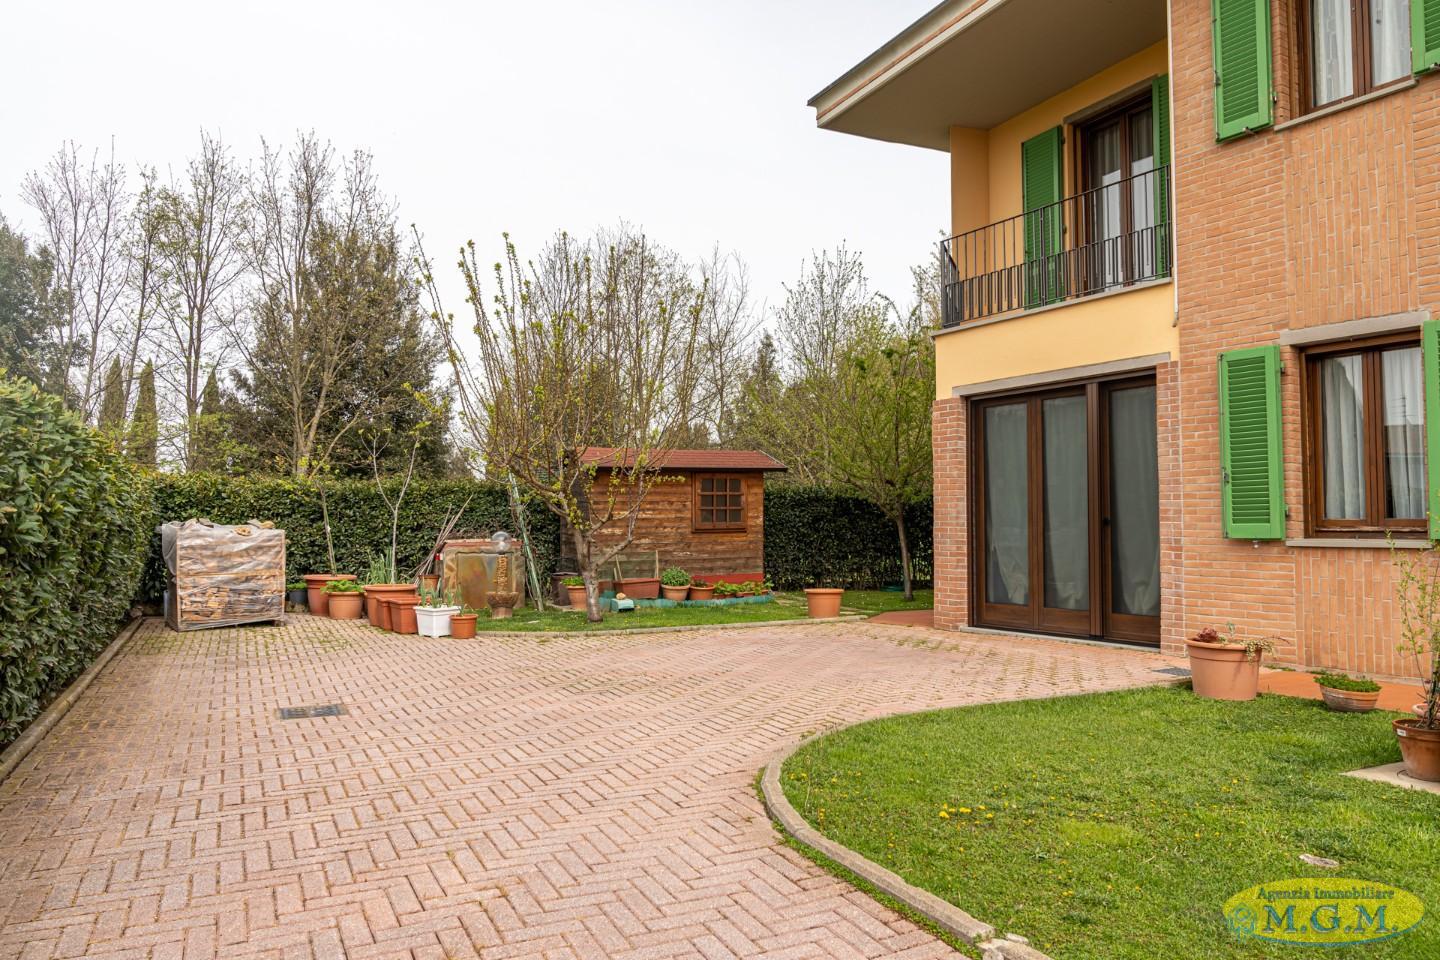 Villa Bifamiliare in vendita a Santa Croce sull'Arno, 7 locali, prezzo € 388.000 | PortaleAgenzieImmobiliari.it